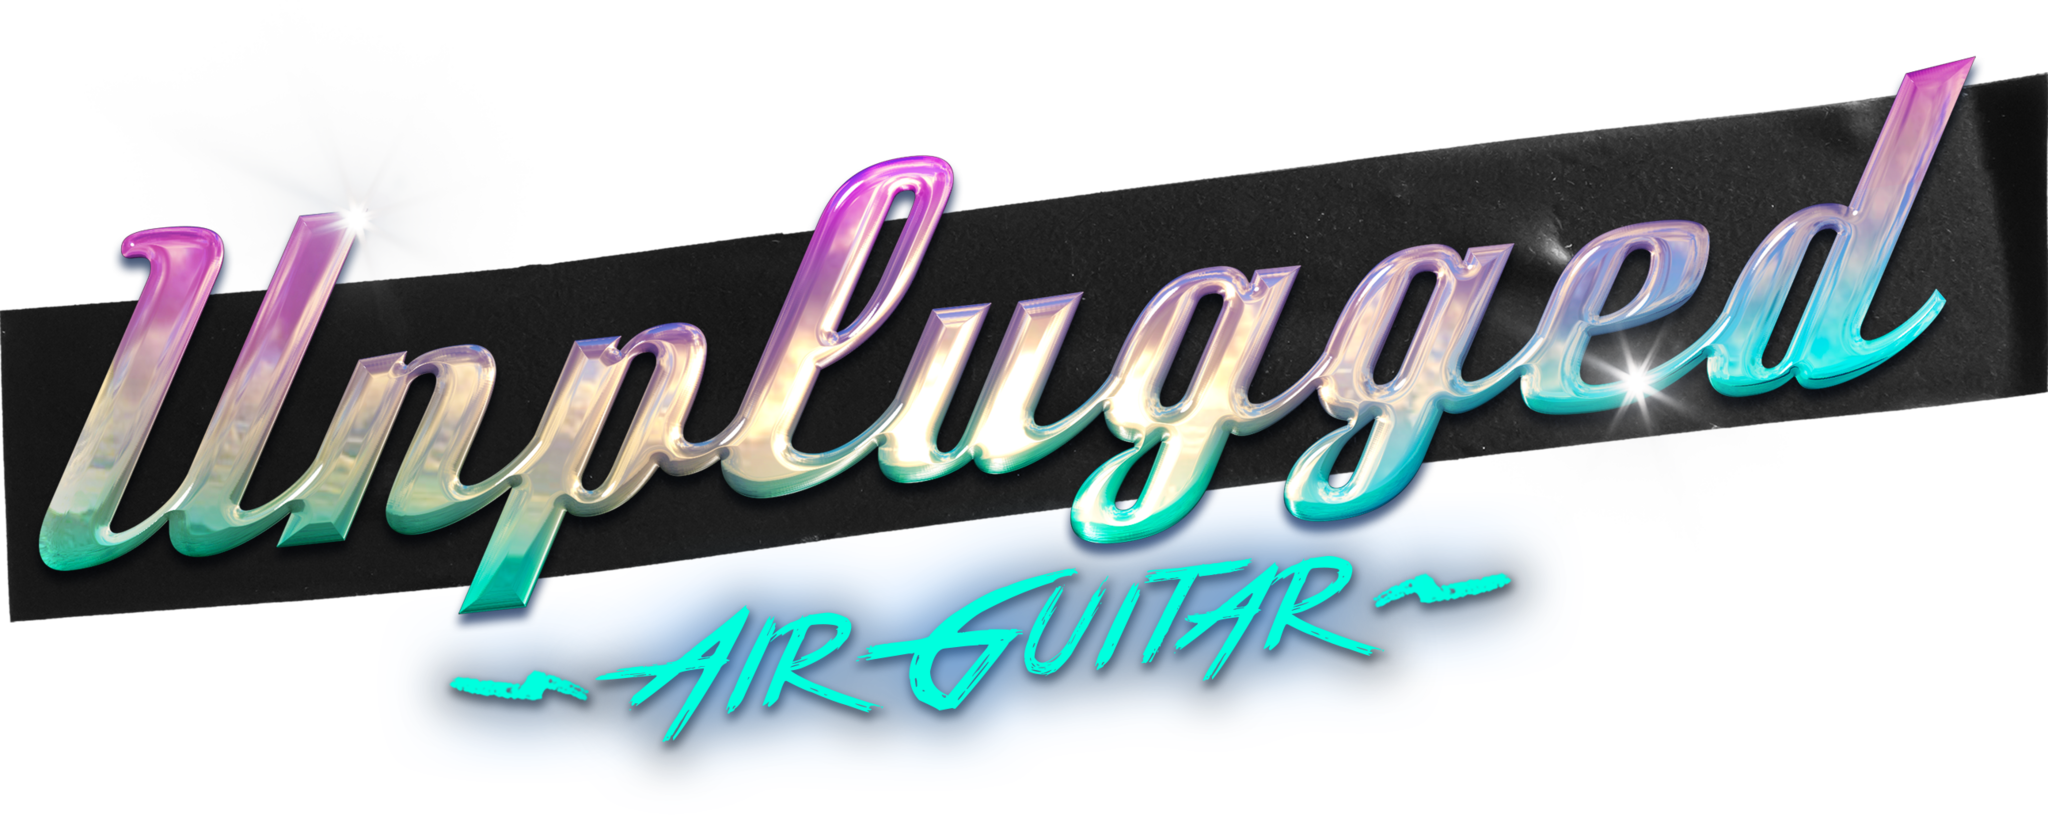 Logotipo da Air Guitar Unplugged